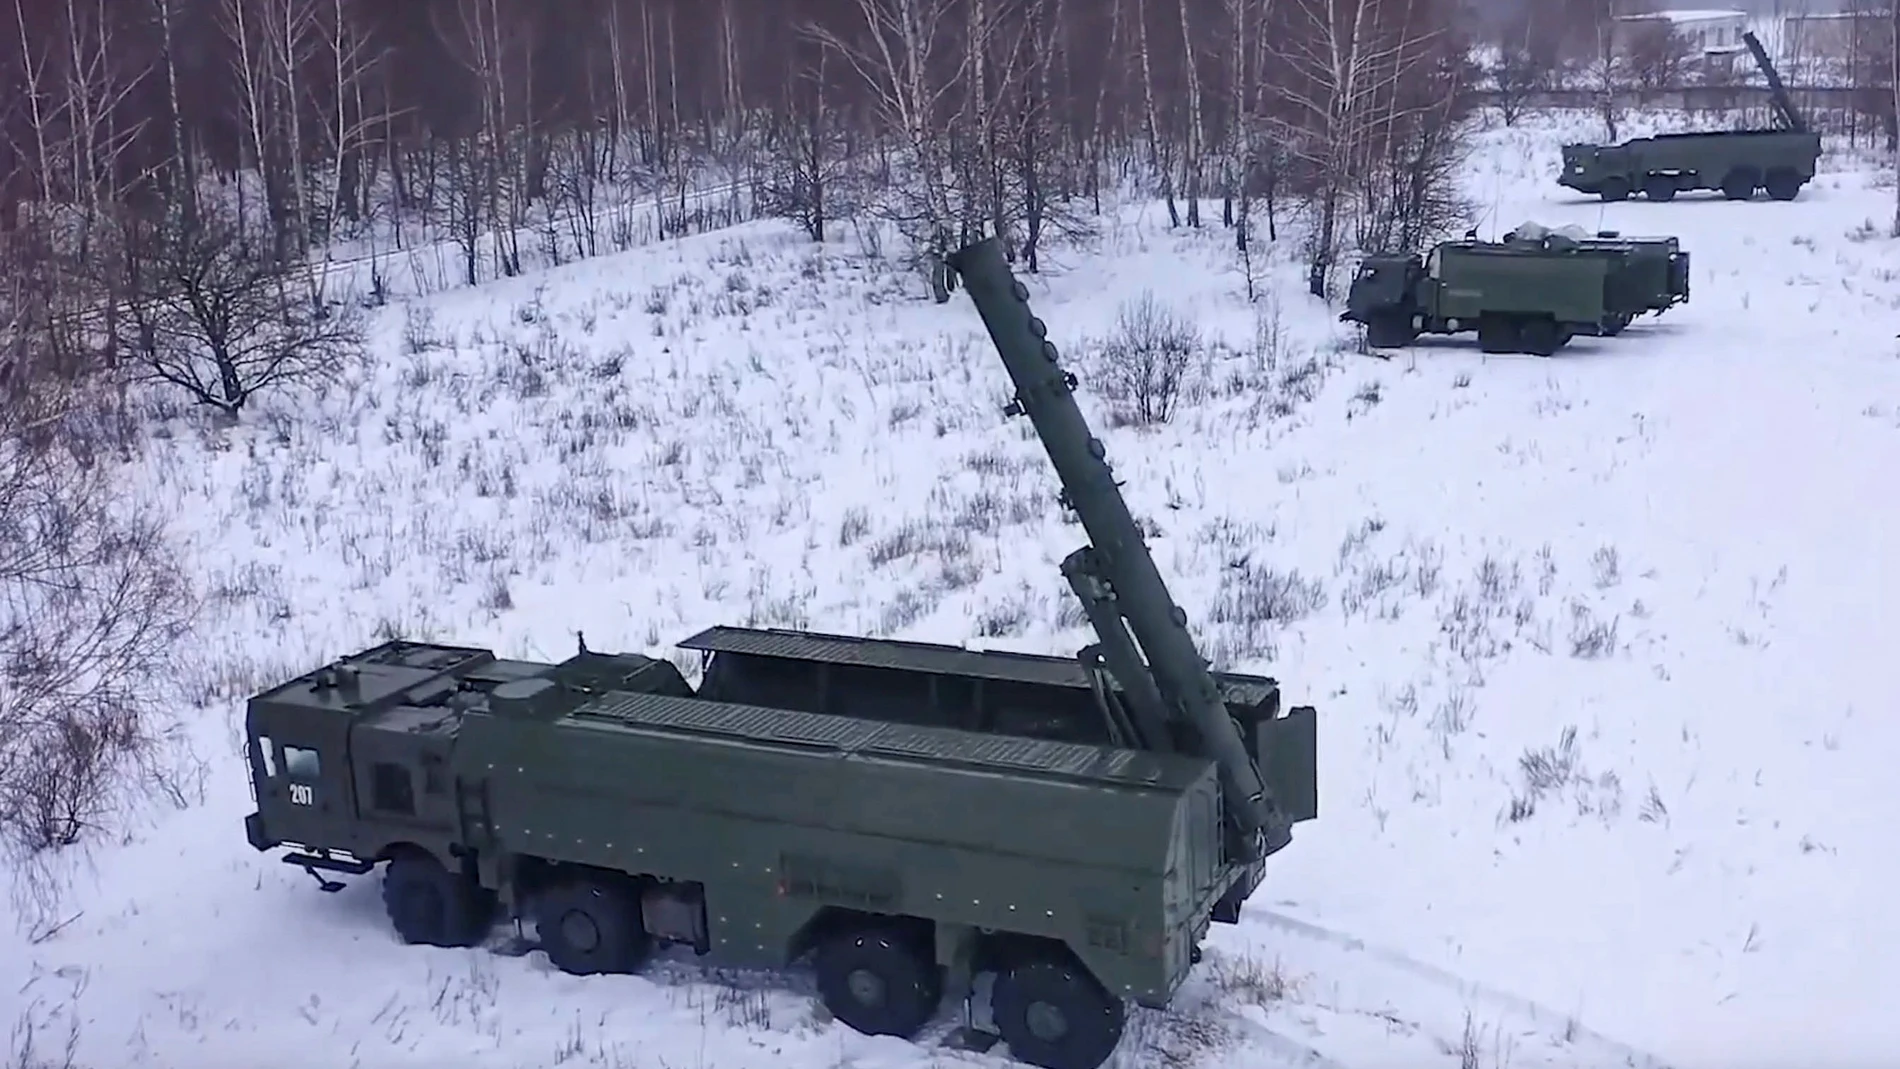 Lanzadores de misiles "Iskander" rusos y vehículos de apoyo que se utilizan en los ejercicios integrales de preparación para el combate previstos con las tropas del Distrito Militar Occidental